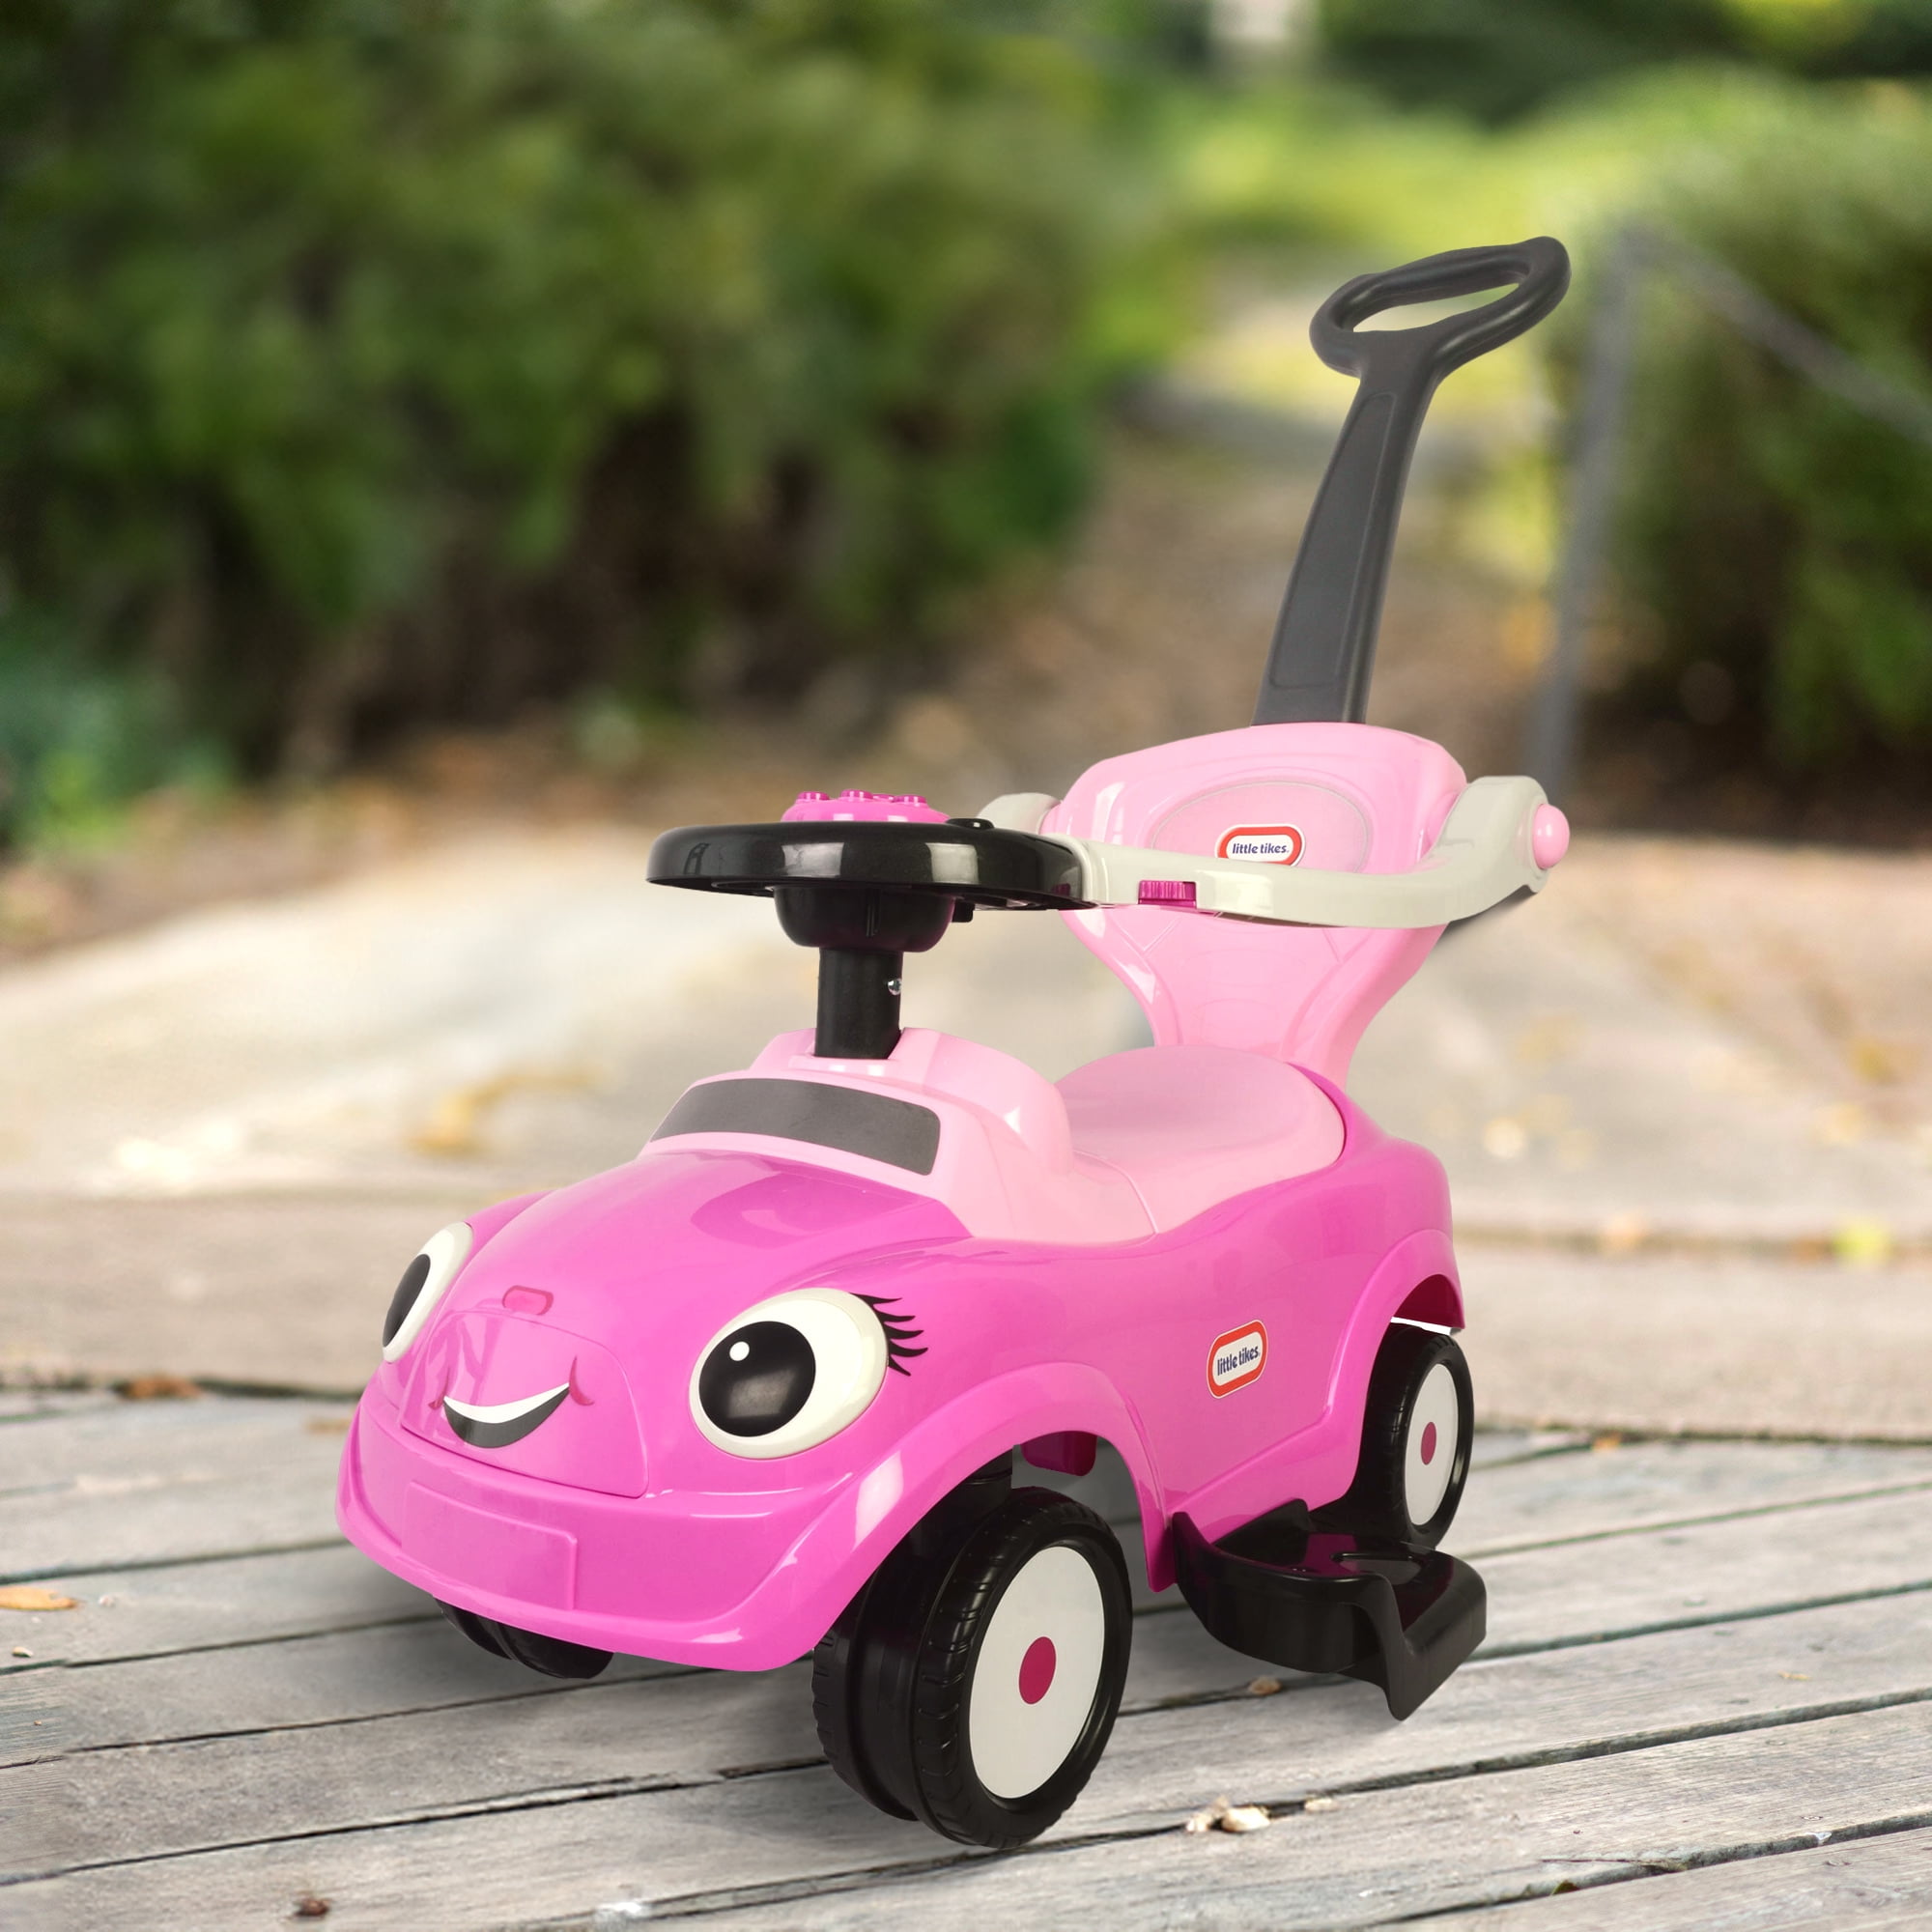 Optimal carro de bebé 3 en 1 rosa palo